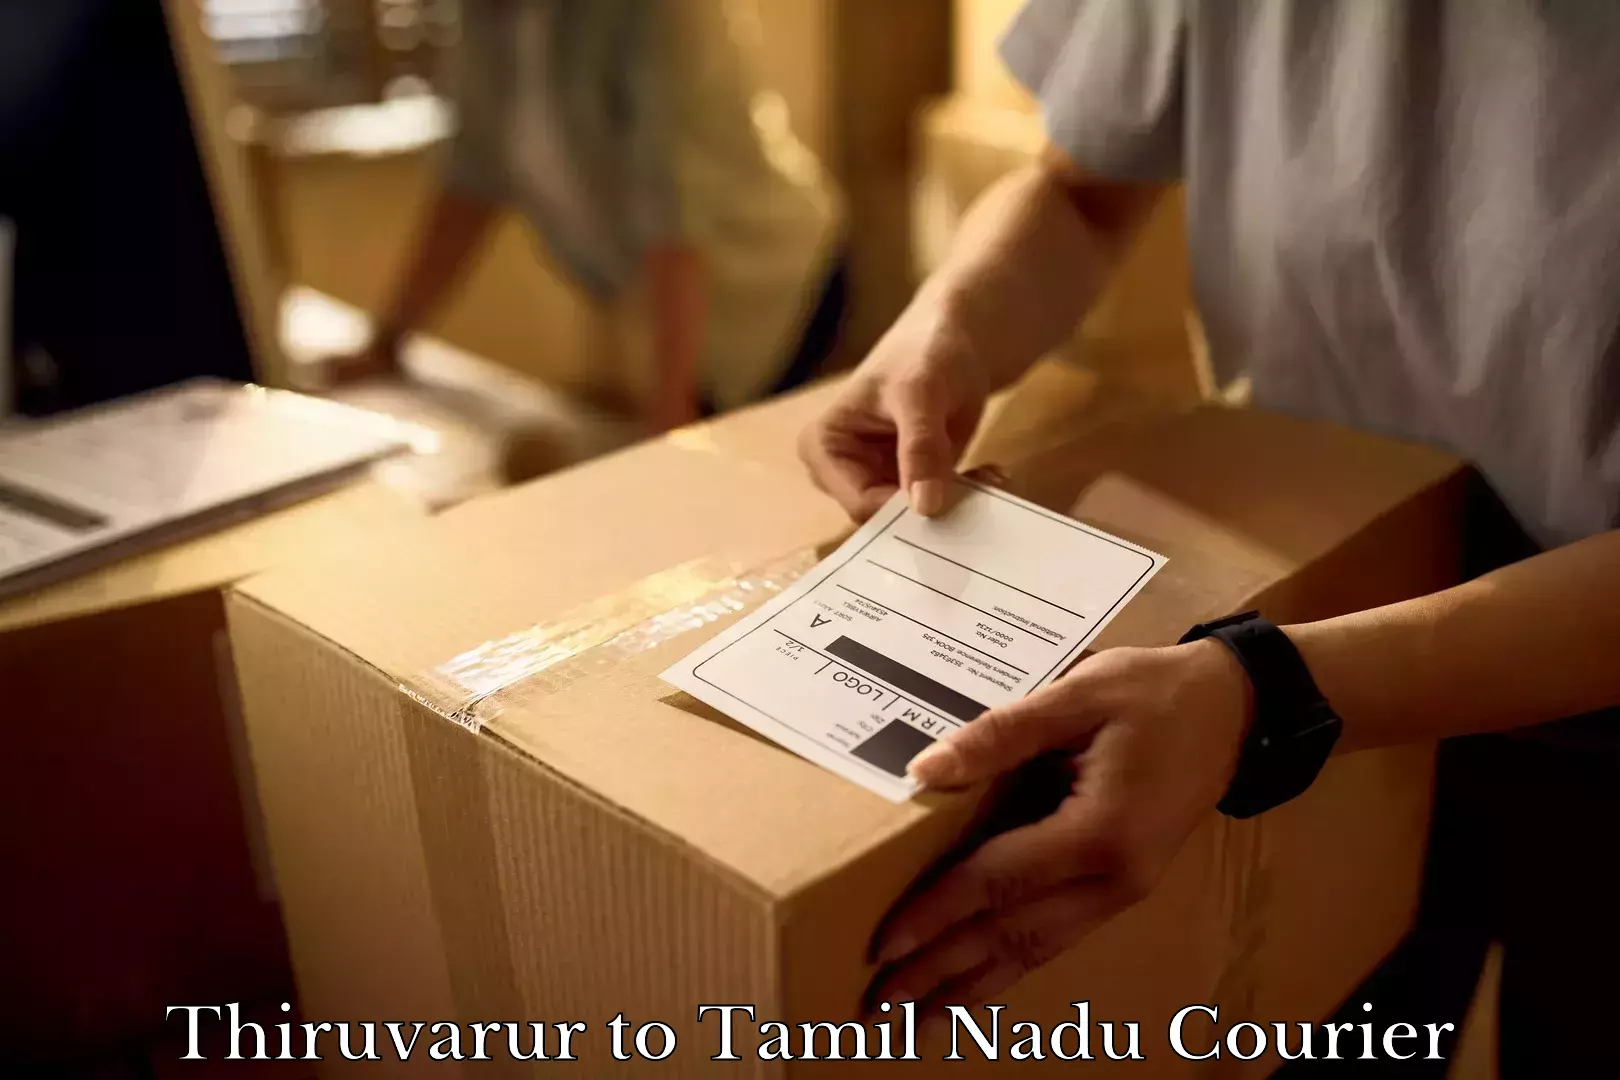 Furniture transport professionals Thiruvarur to Ambur